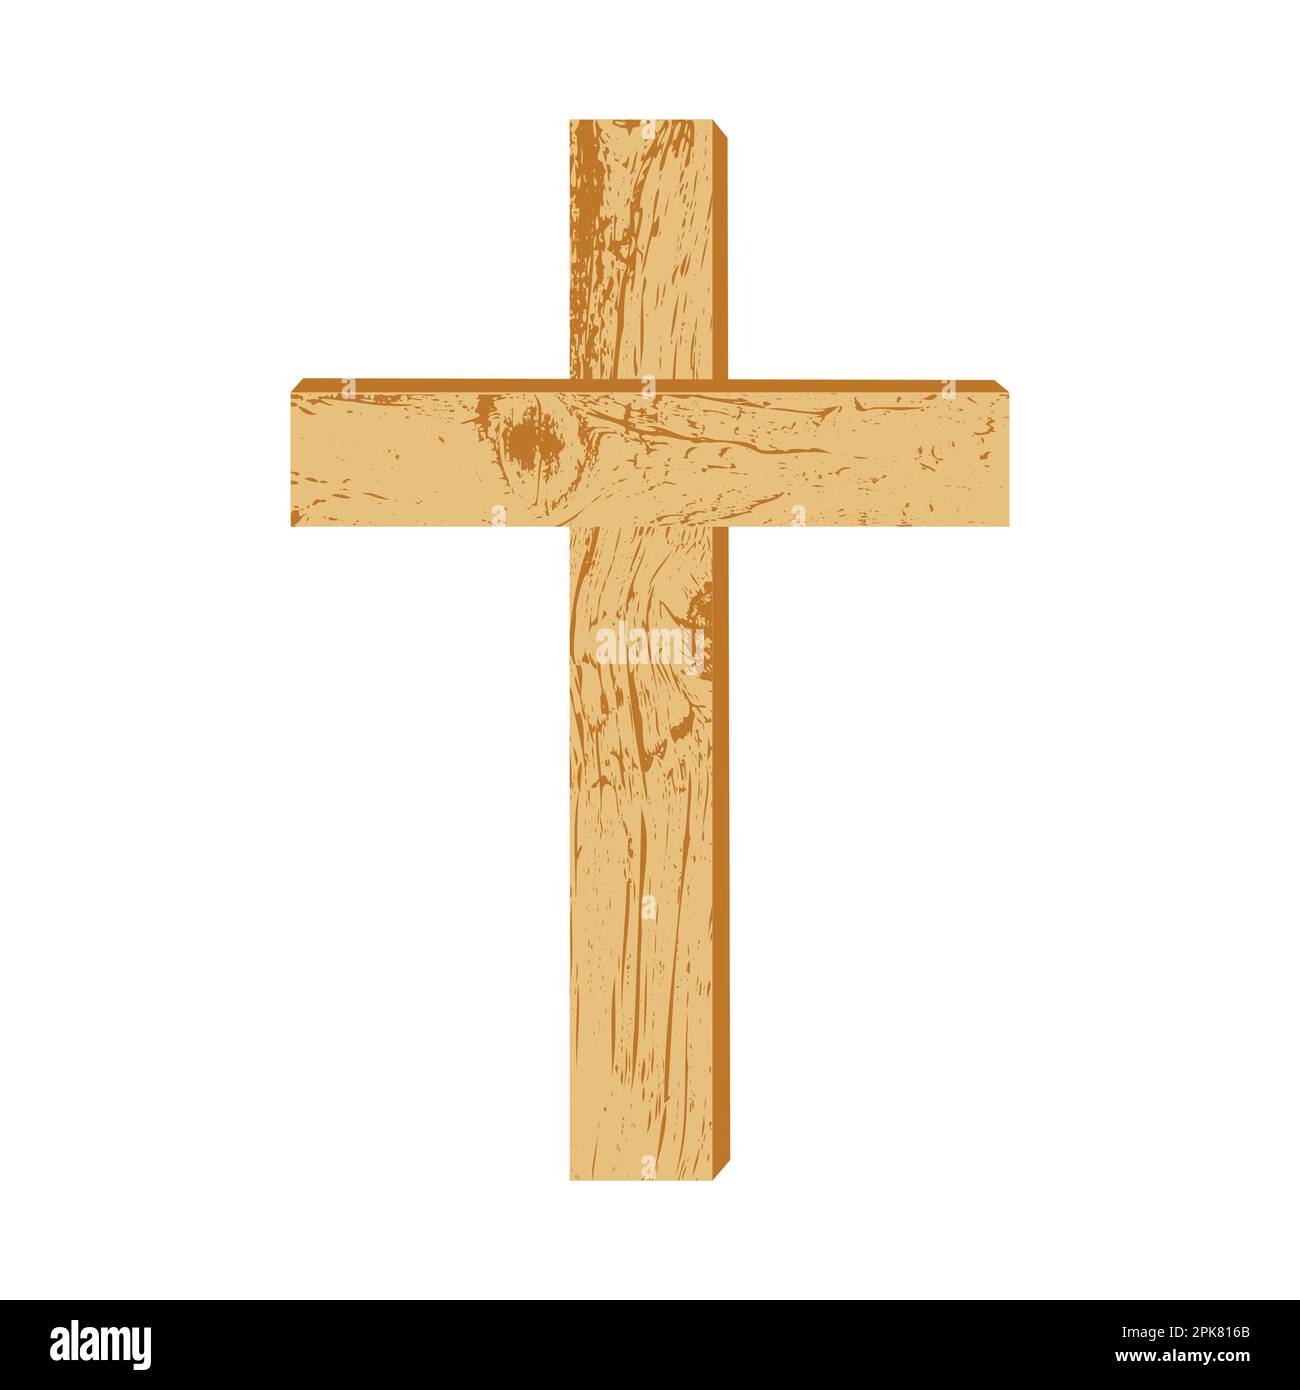 Hölzernes christliches Kreuz Ein einfaches Holzkreuz auf weißem Hintergrund. Designelement für religiöse Feiertage und Themen. Vektordarstellung. Stock Vektor